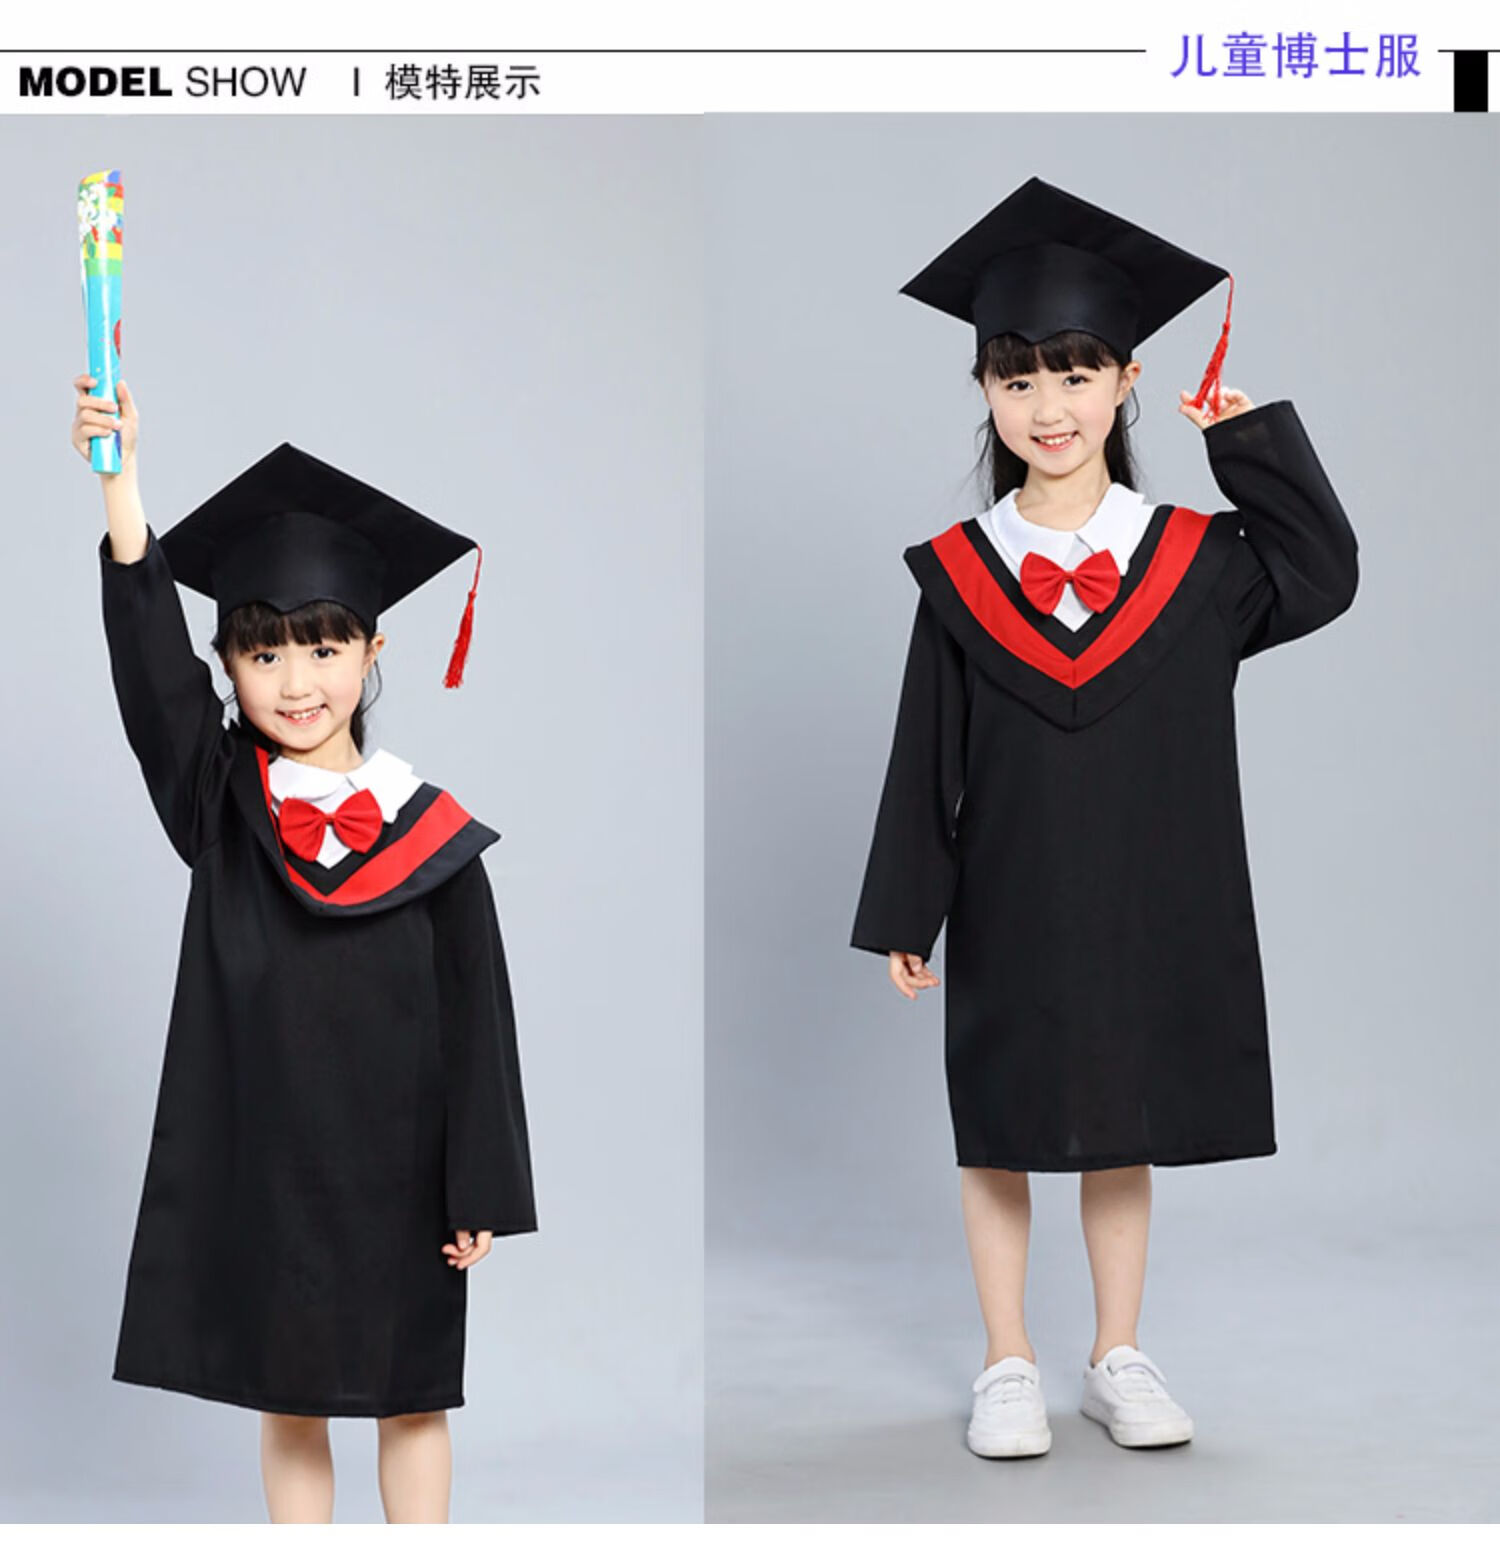 【新品】博士服幼儿园小学毕业照服装学士服毕业礼服拍照衣服博士帽子